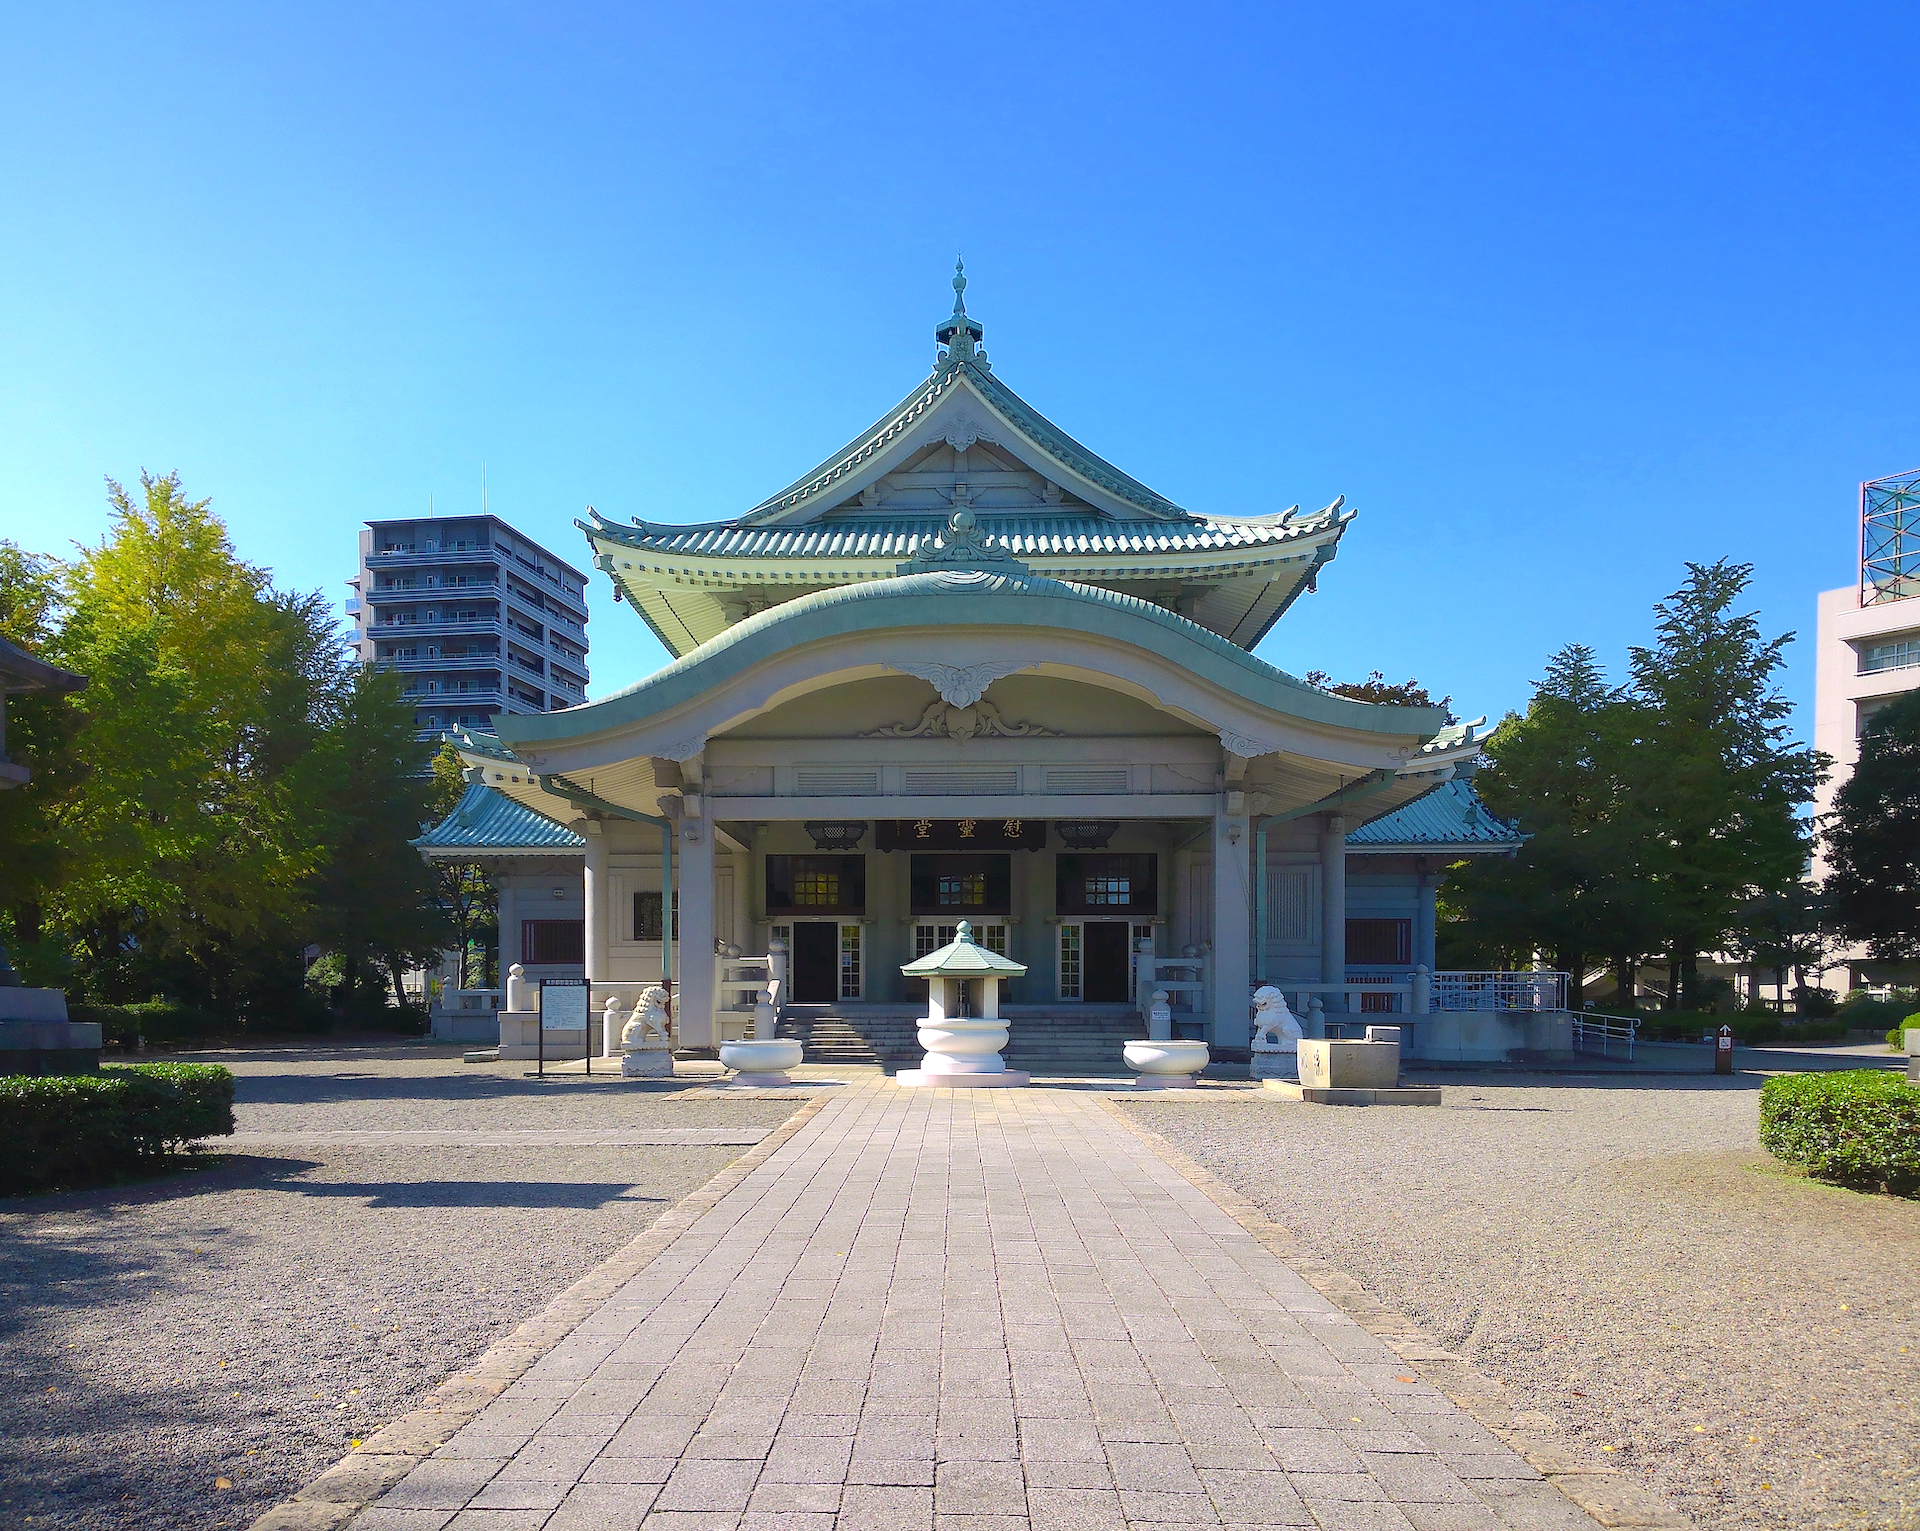 東京都慰霊堂